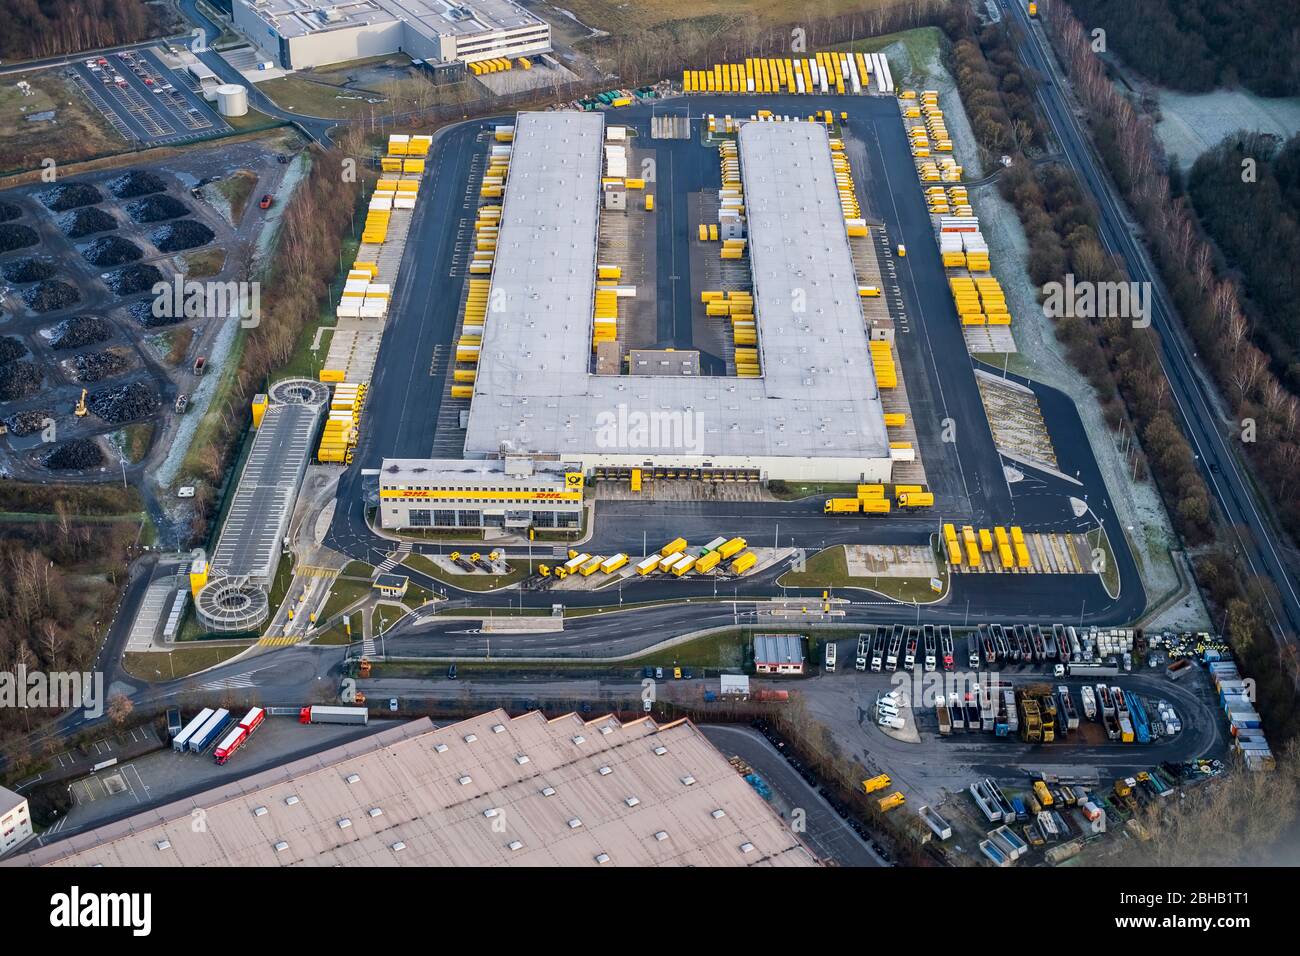 Vista aerea, DHL Freight Center, Ufficio produzione e vendite, East Business Park, Dorsten, Ruhr Area, Nord Reno-Westfalia, Germania Foto Stock